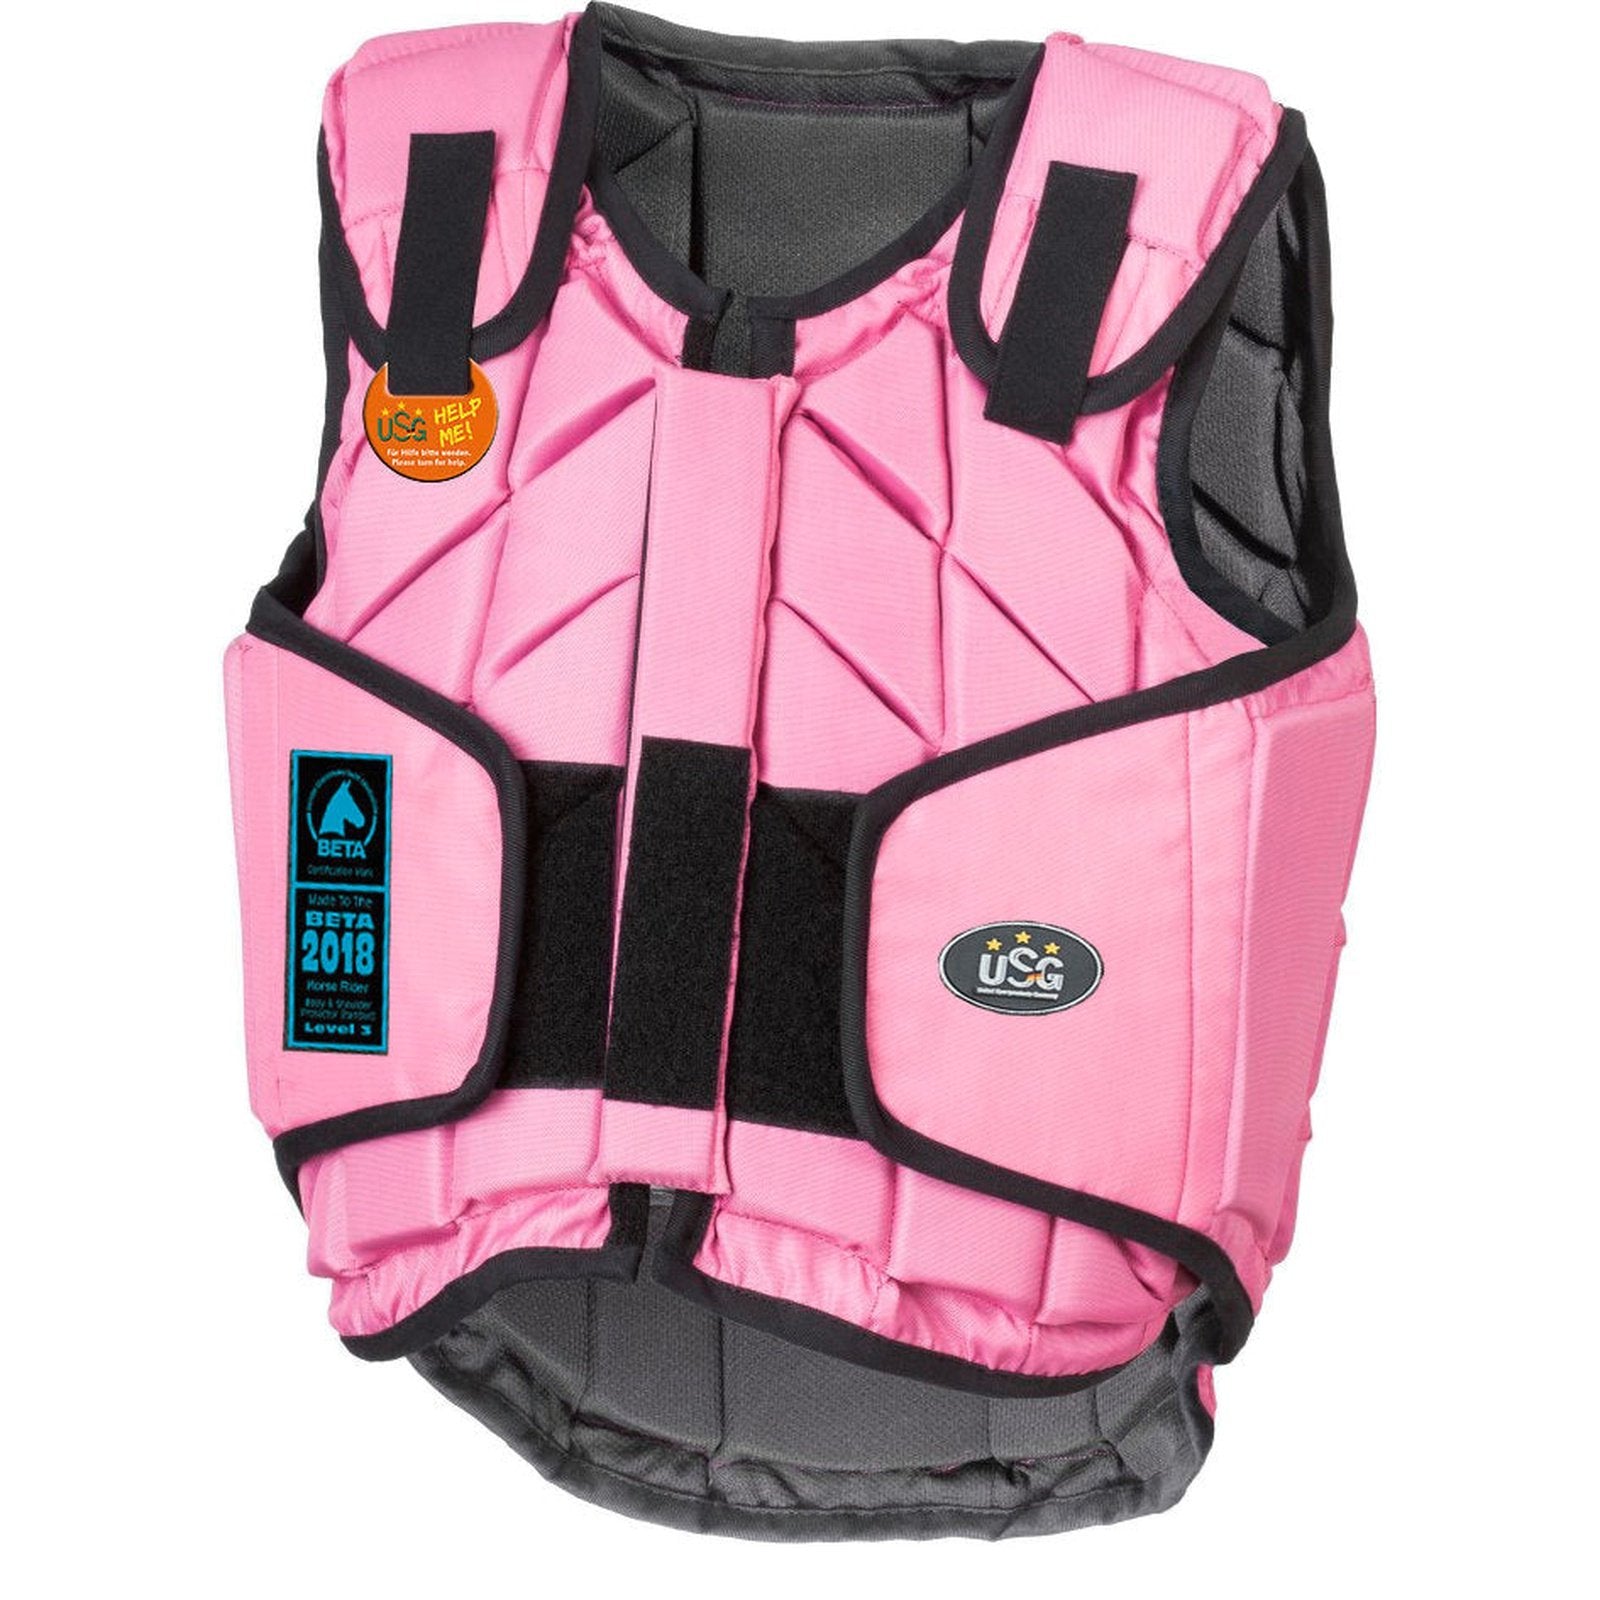 USG "Eco-Flexi Panel-Sicherheitsweste" für Kinder & Erwachsene in pink, royal blau, schwarz bei SP-Reitsport USG bei SP-Reitsport